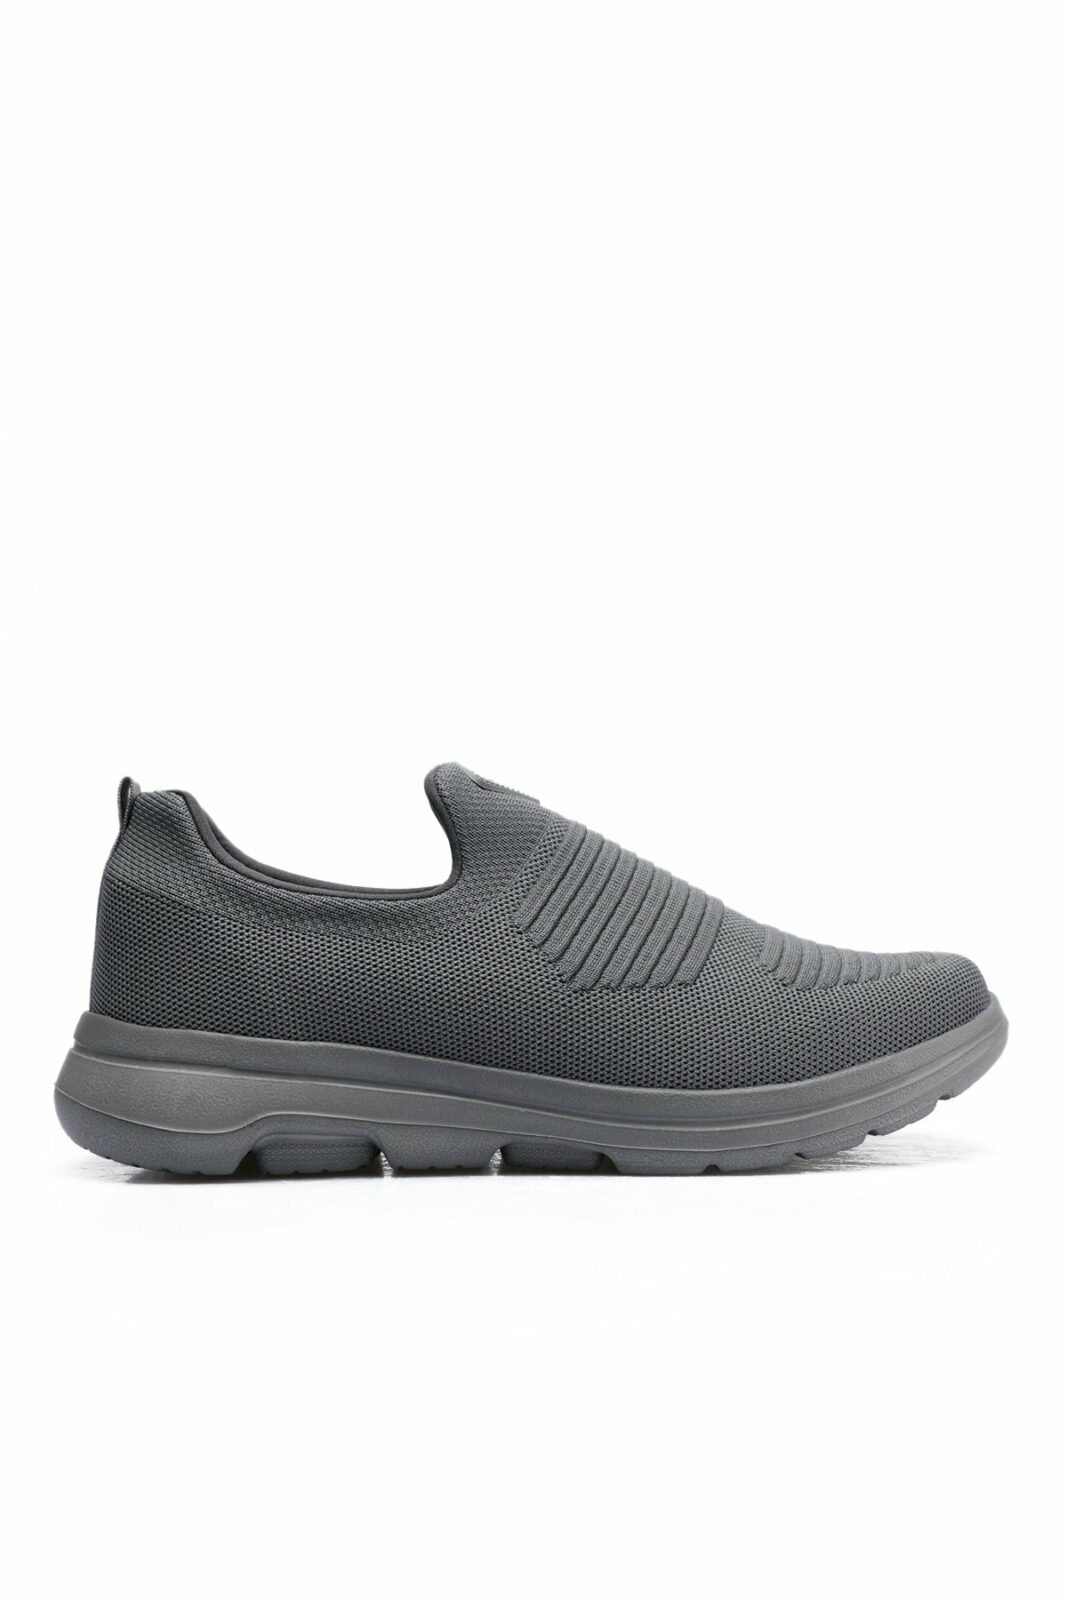 Slazenger Sneakers - Gray